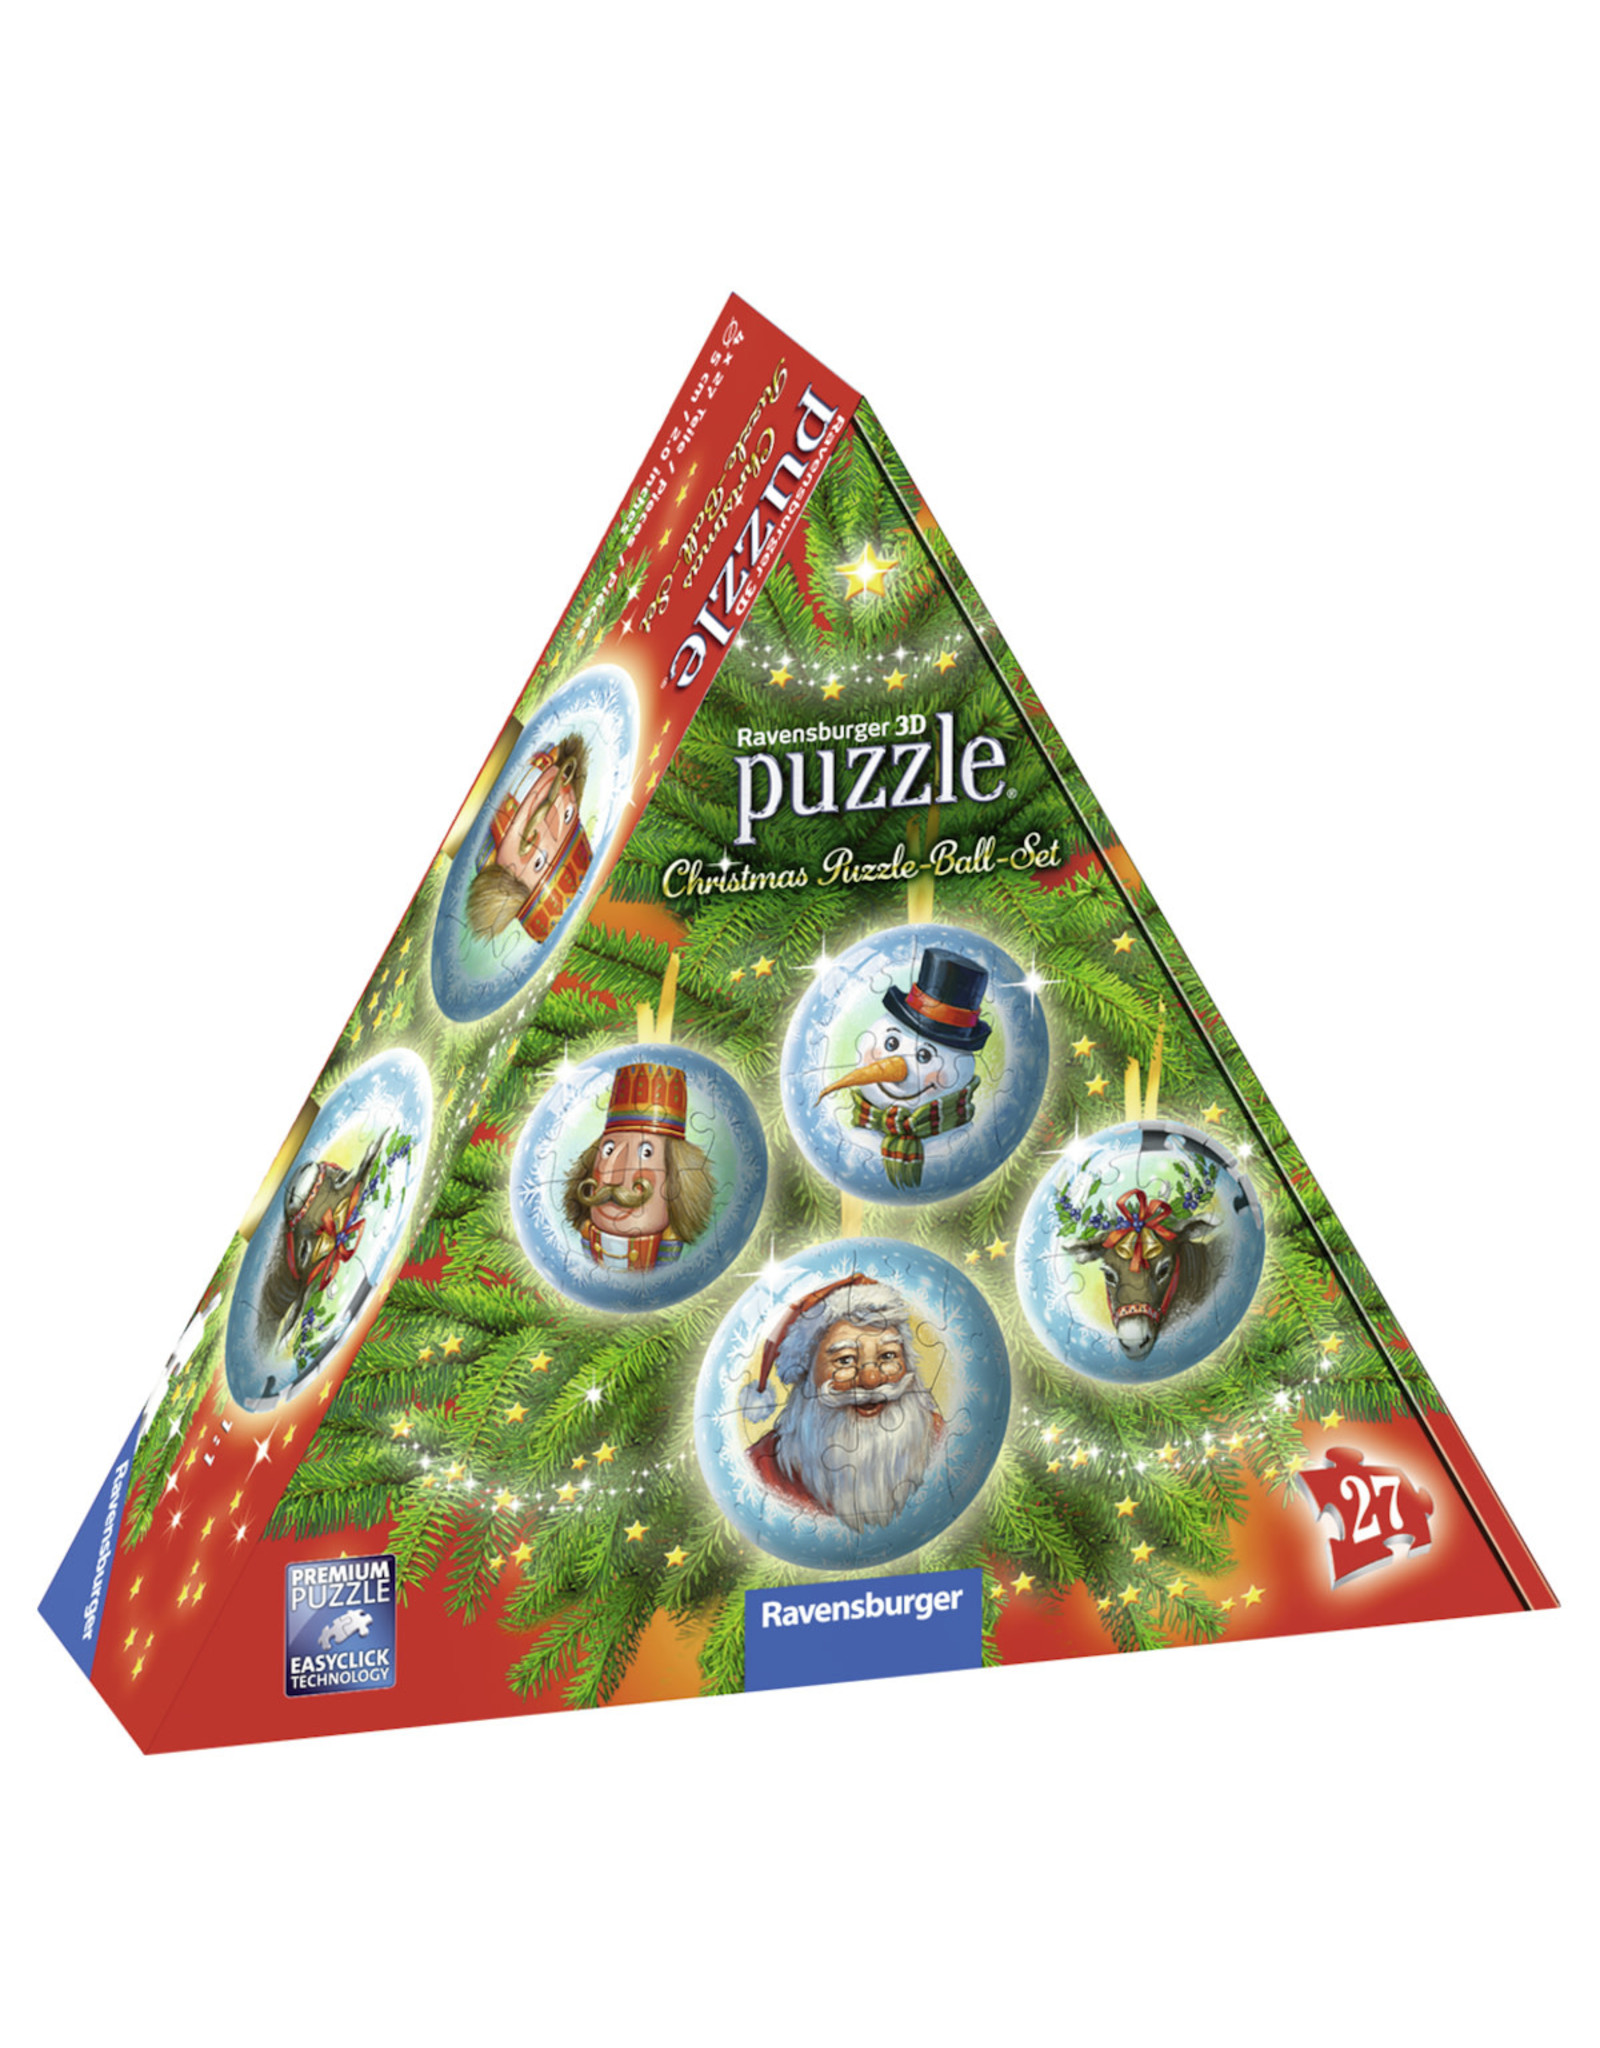 Ravensburger Ravensburger 3D Puzzle Ball Set 116782 Christmas - 4 x 27 Stukjes